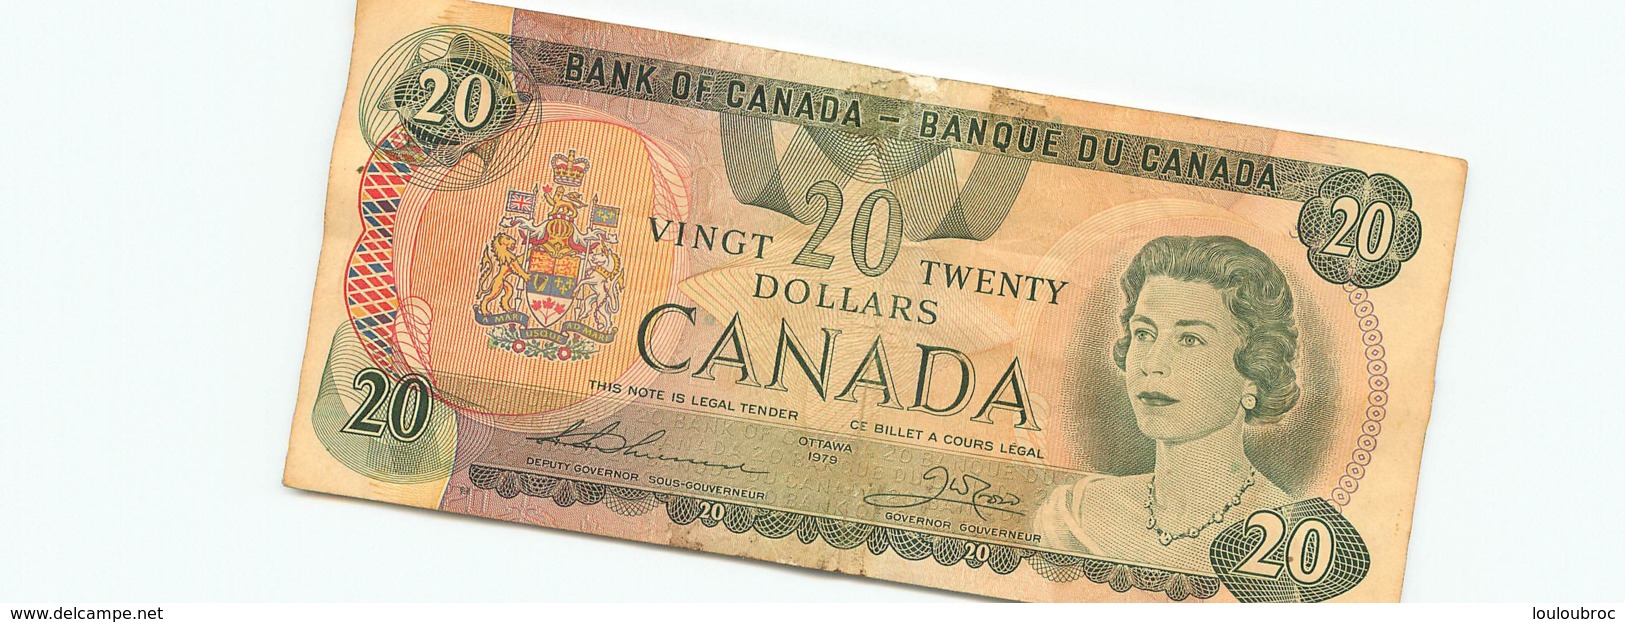 BILLET CANADA VINGT 20 TWENTY DOLLARS CANADA 1979 - Canada